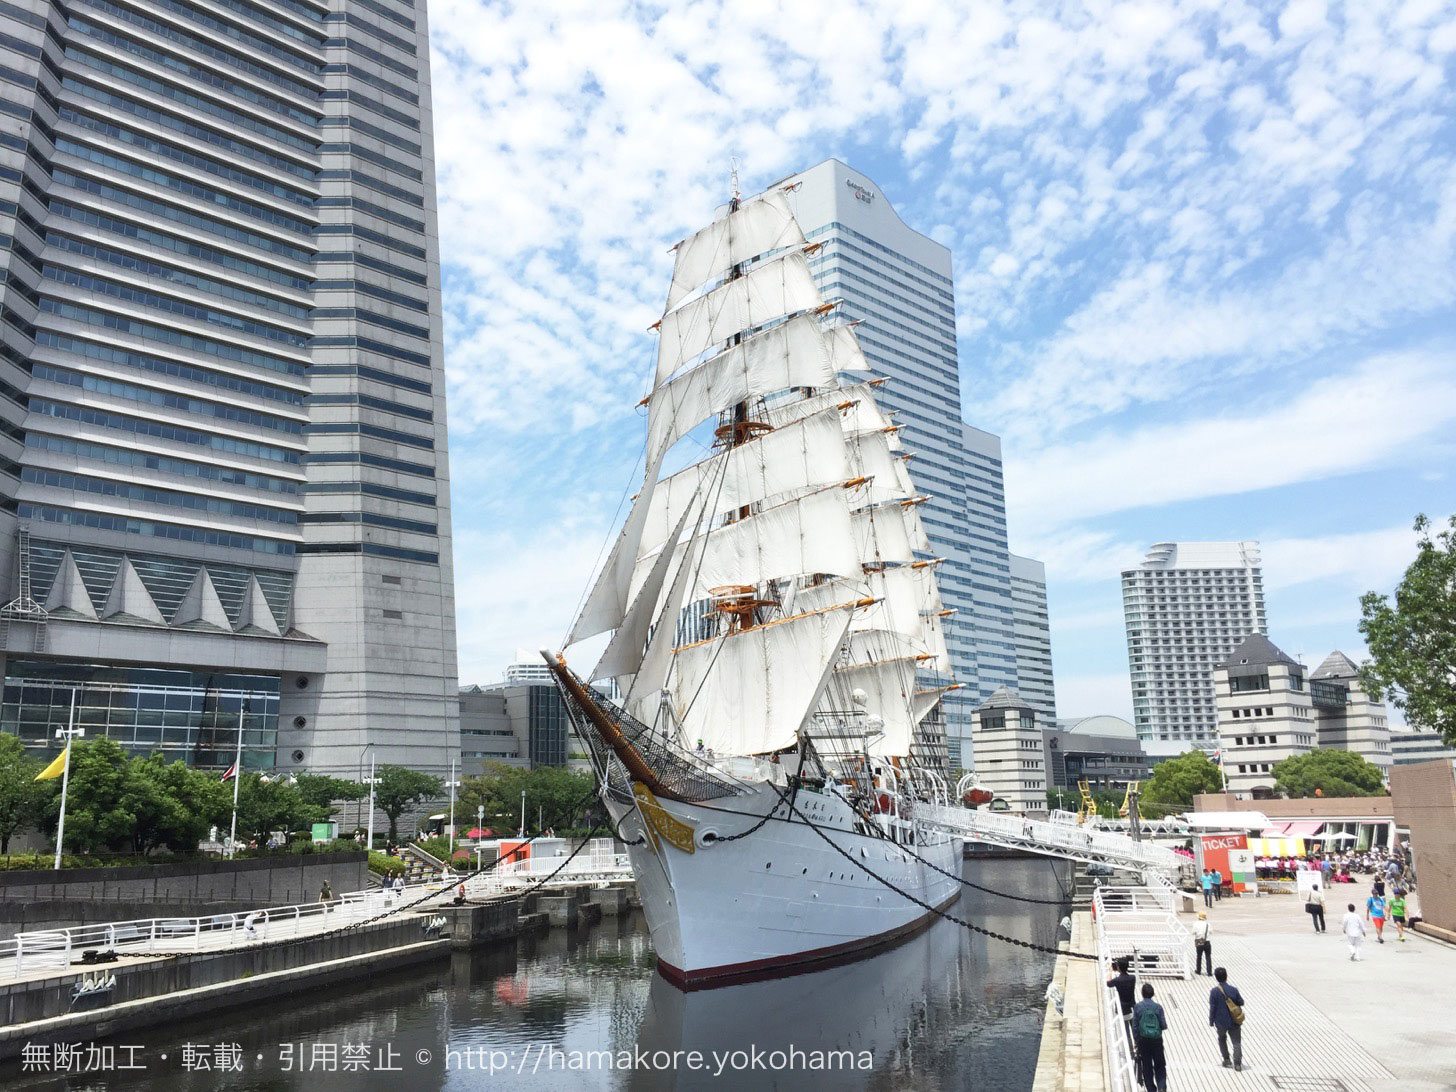 帆船日本丸 回目の 進水記念祭 を18年1月27日に開催 入館無料やお餅プレゼント はまこれ横浜